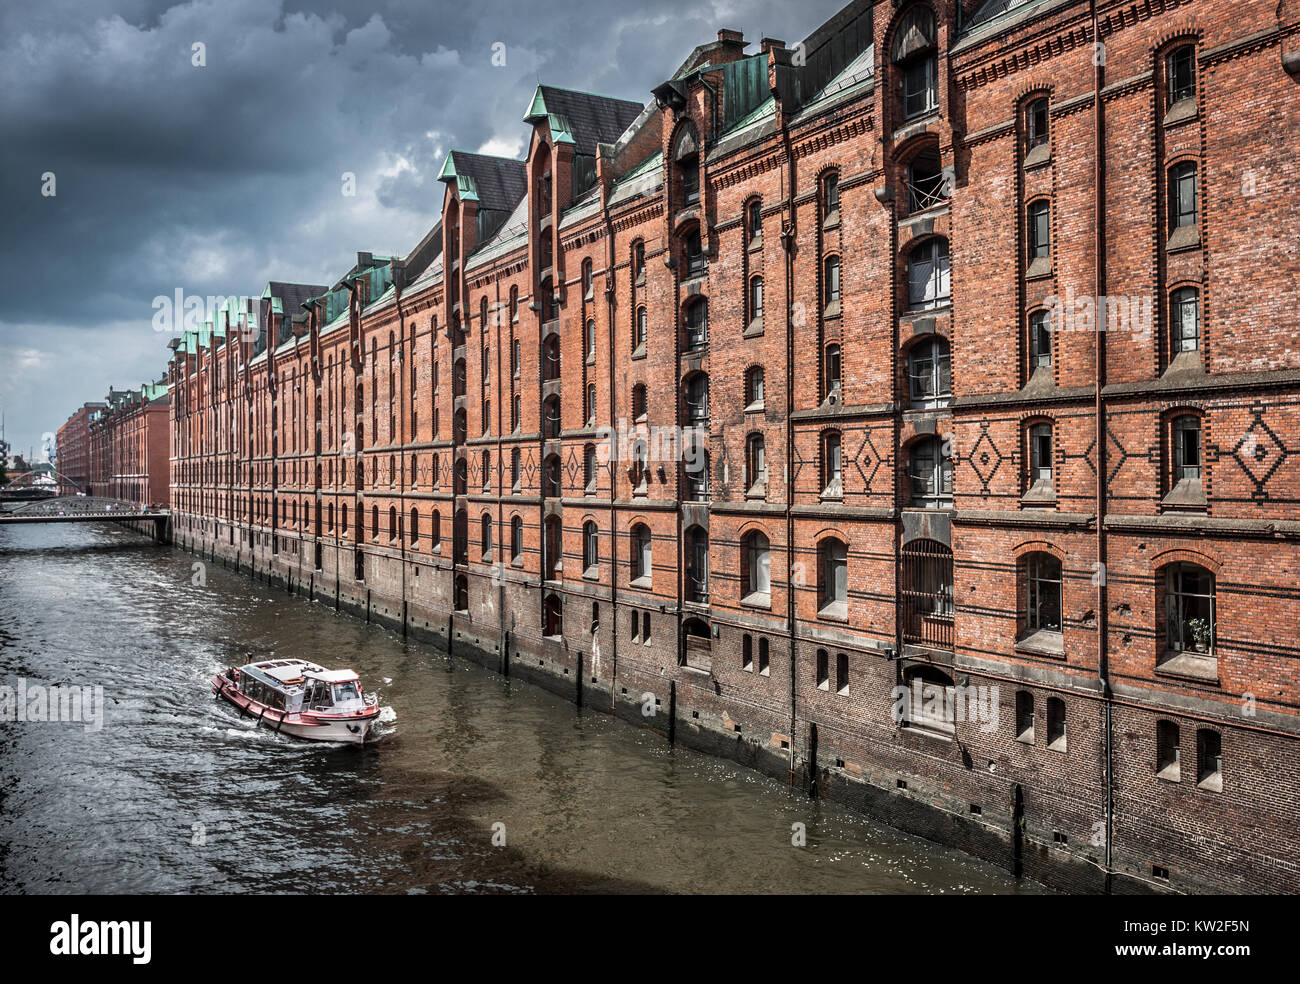 Famoso distrito de almacenes Speicherstadt con nubes oscuras antes de la tormenta en Hamburgo, Alemania. Foto de stock